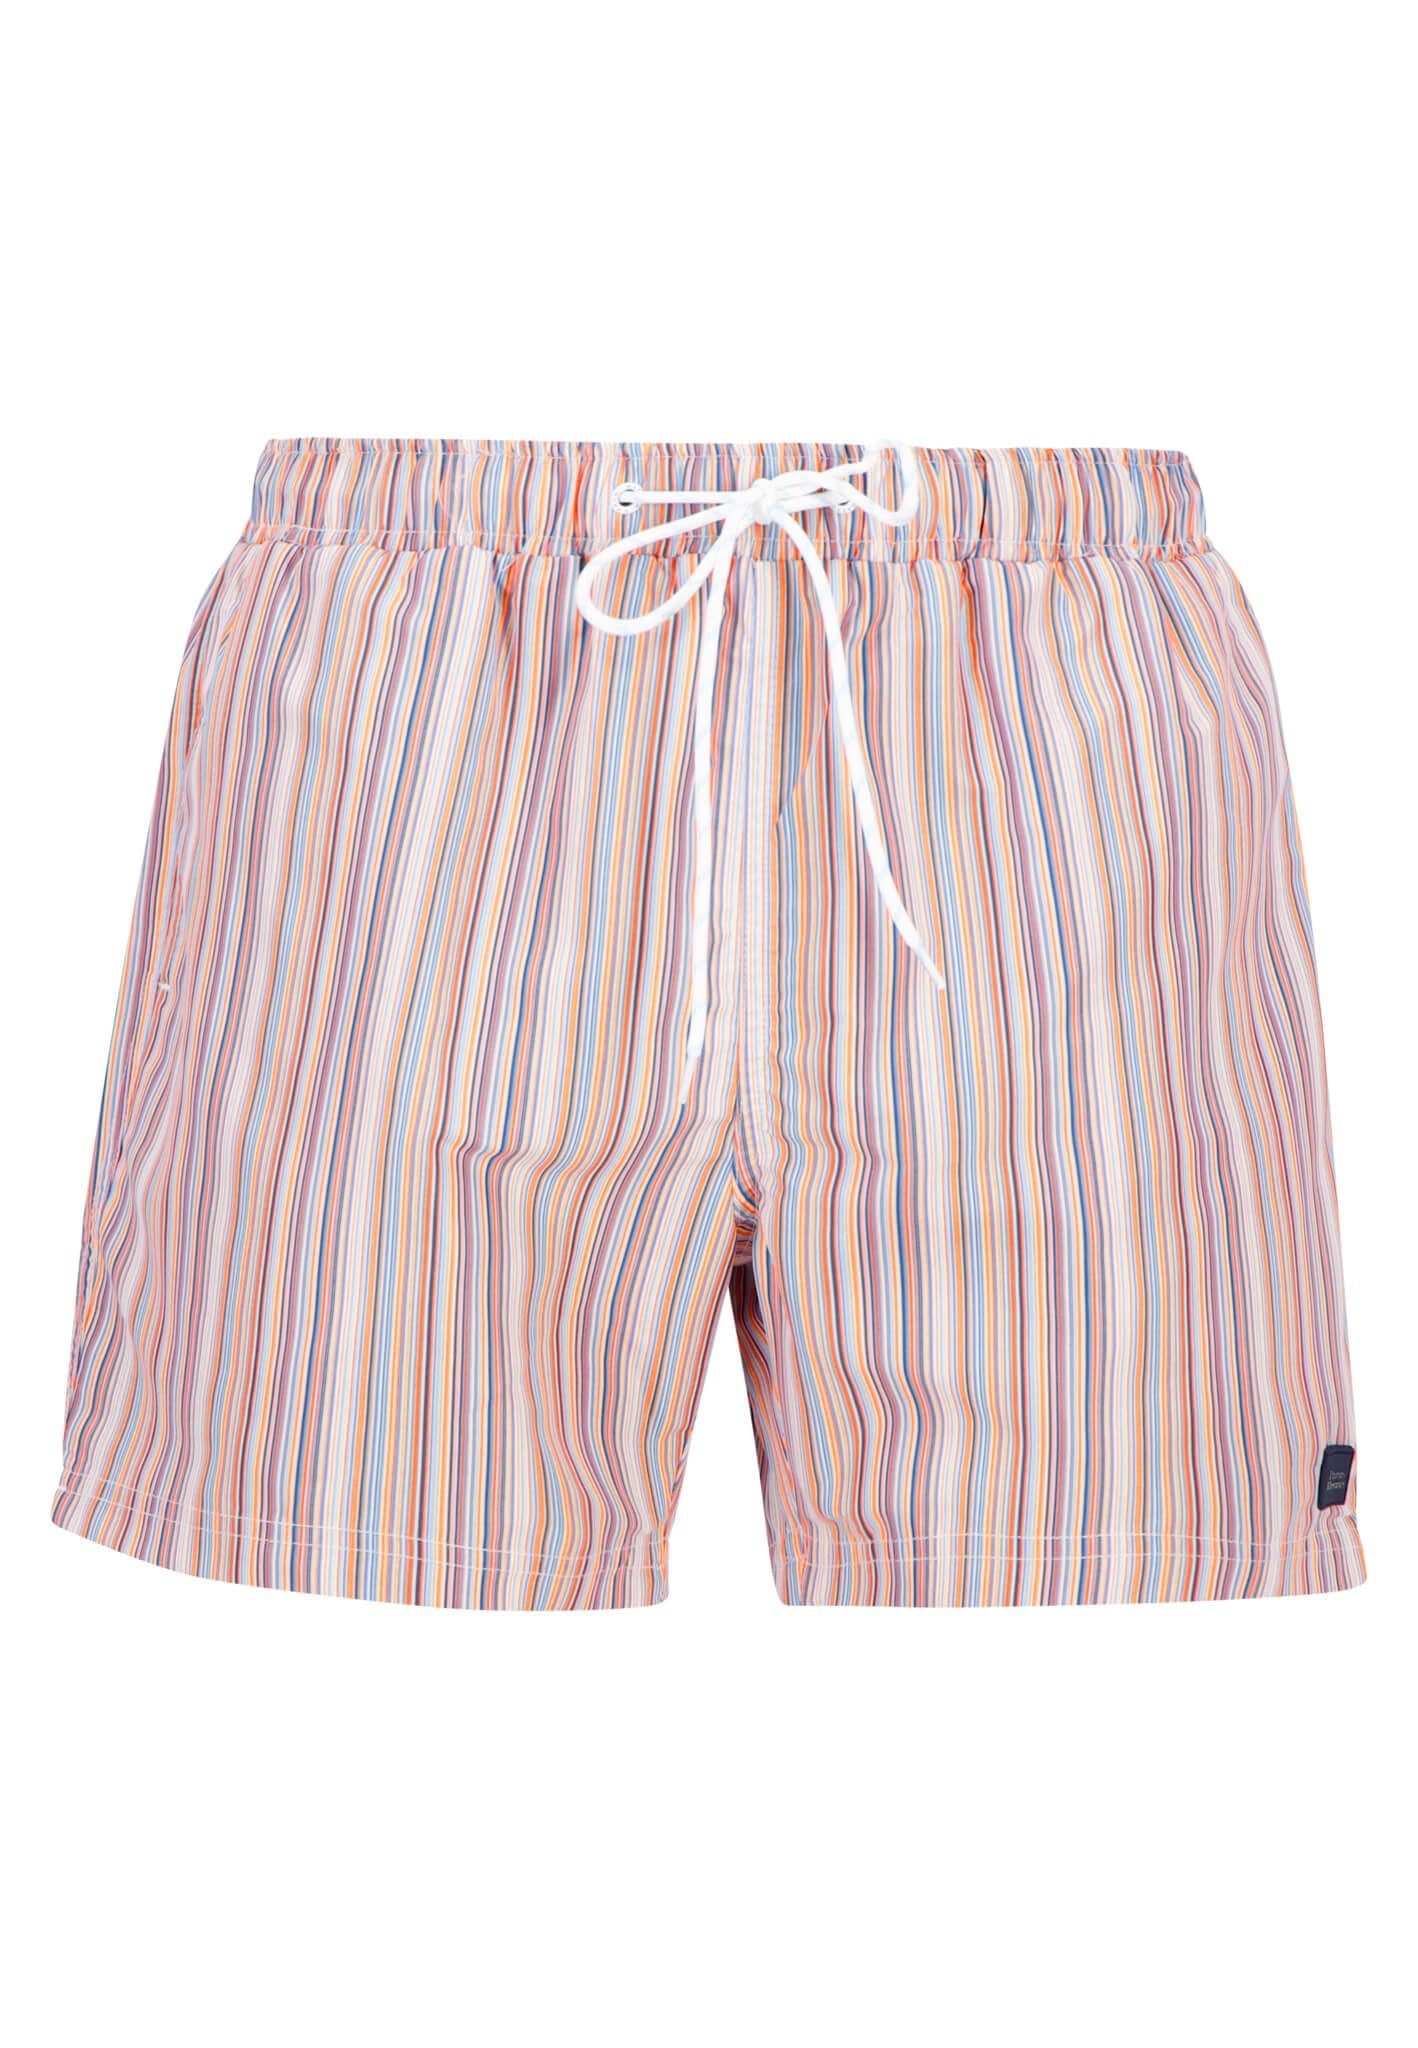 Fynch Hatton Striped Swim Shorts - Tangerine